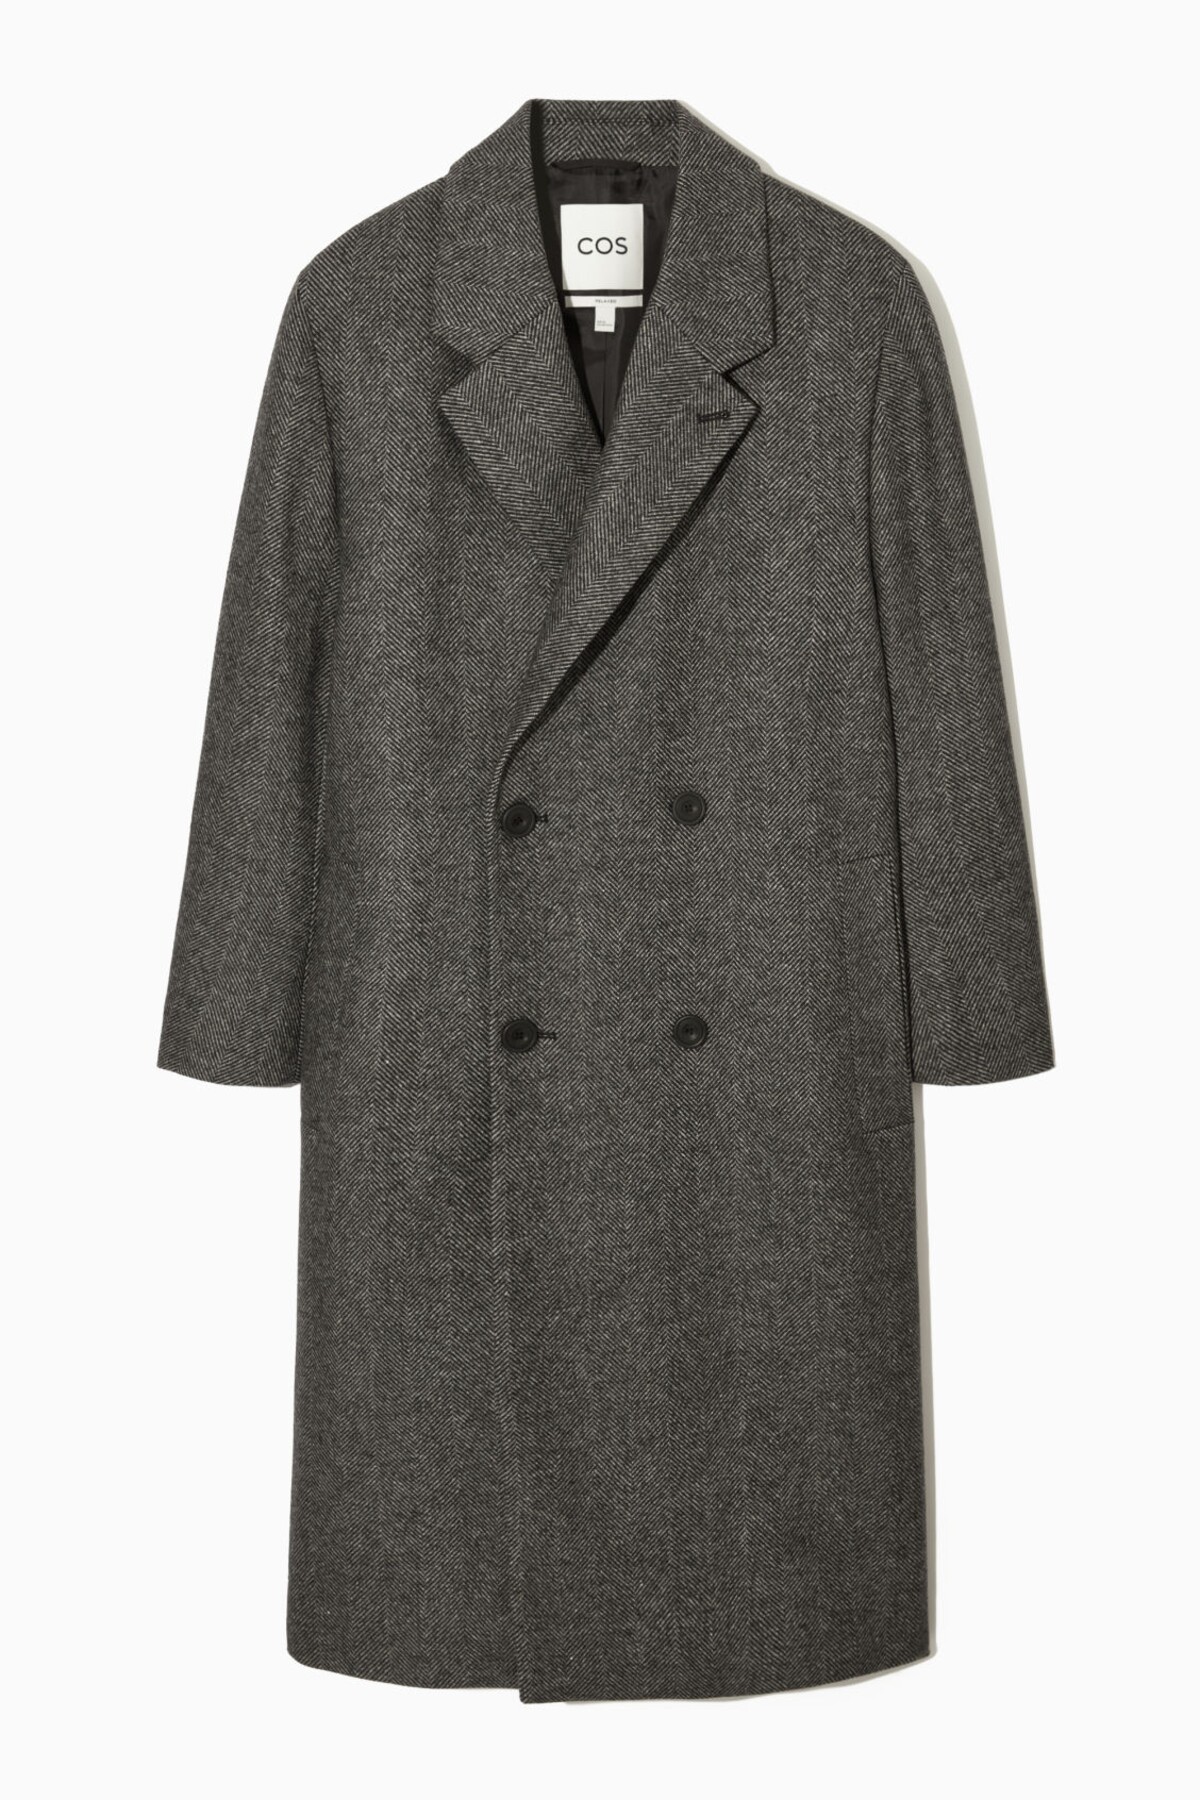 Vlnený kabát s dvojradovým zapínaním v tmavosivom farebnom vyhotovení od značky COS za 250 eur.